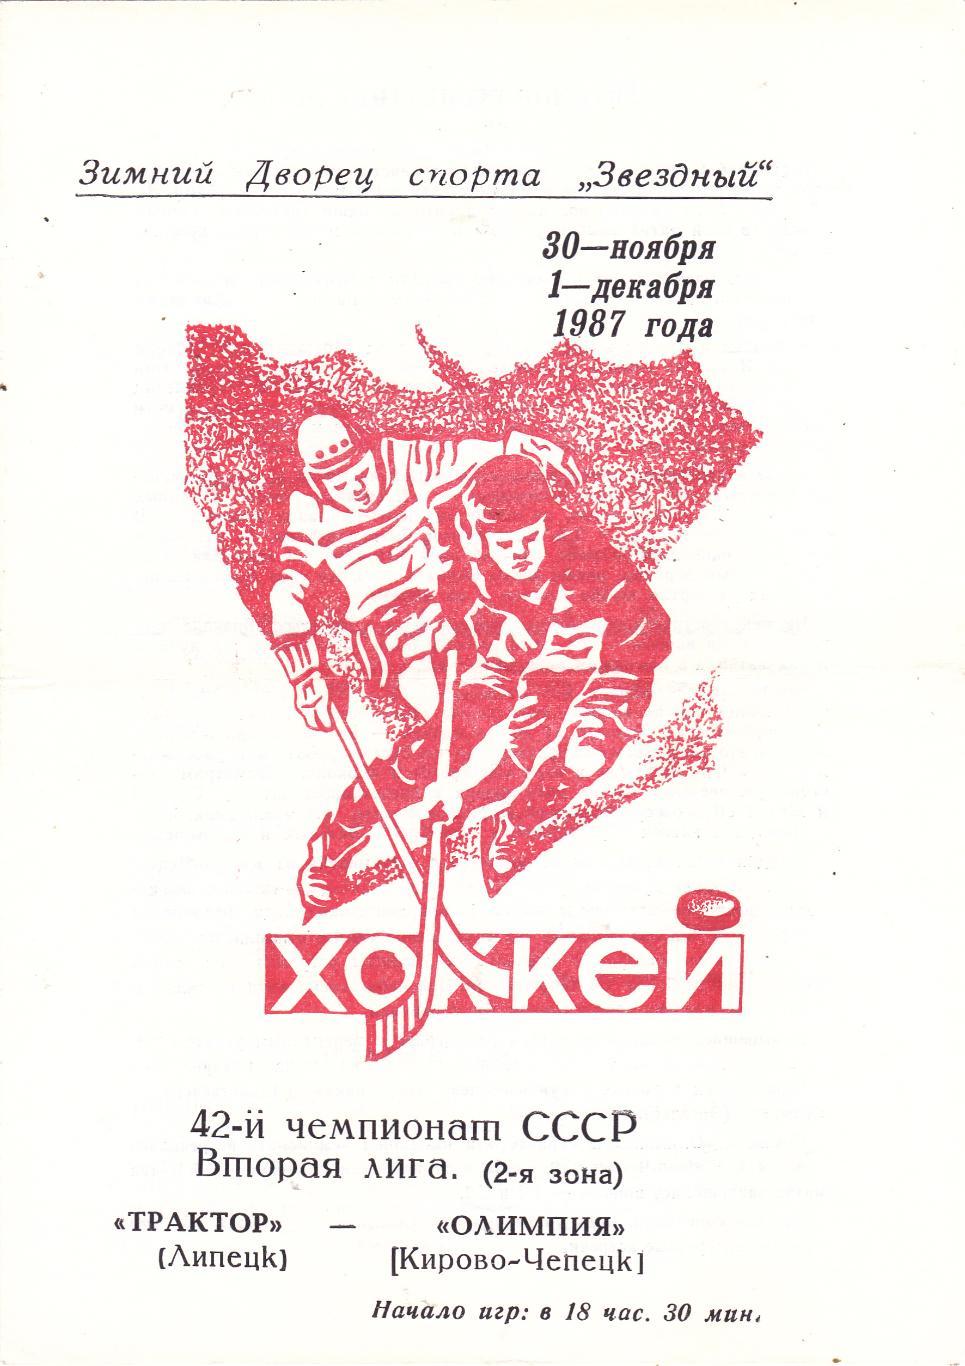 Трактор (Липецк) - Олимпия (Кирово-Чепецк) 30.11-01.12.1987